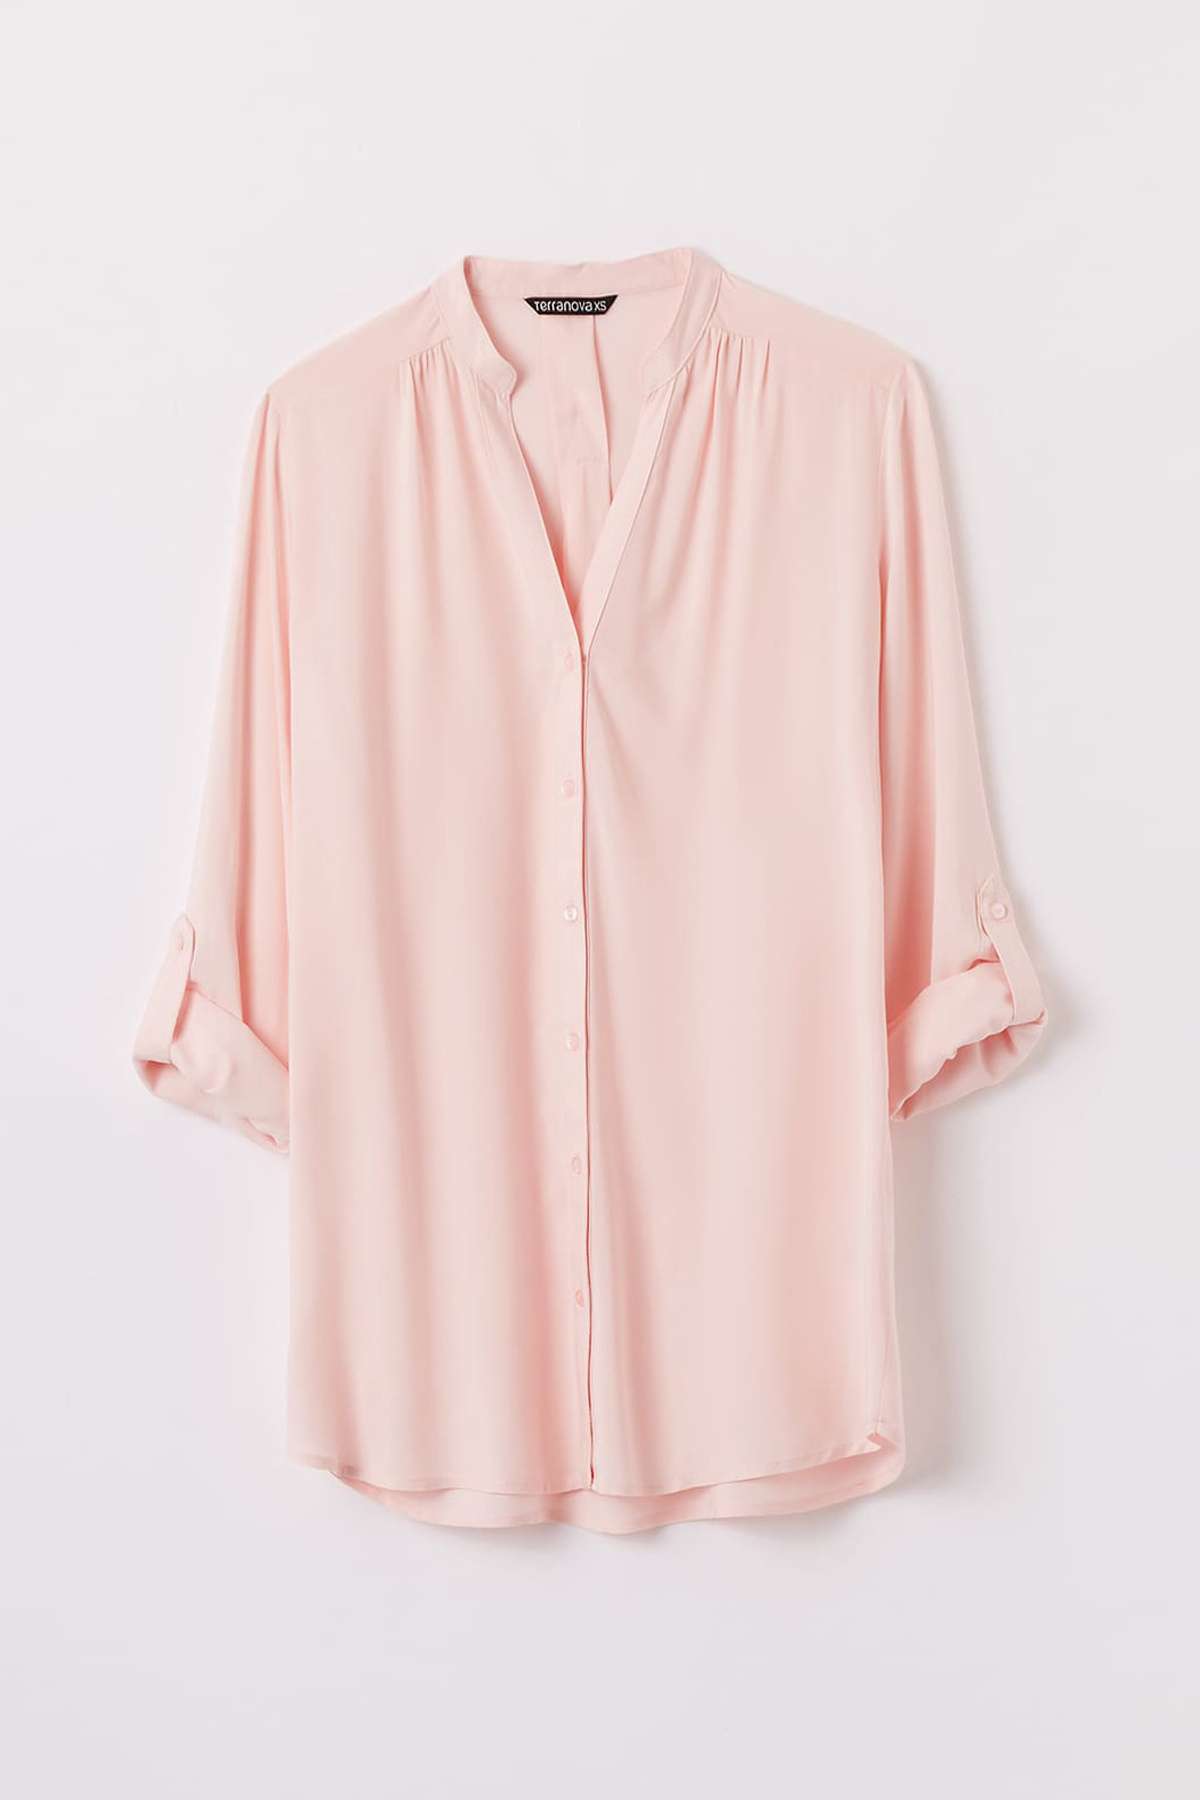 Camicia rosa Terranova a 15,99 euro